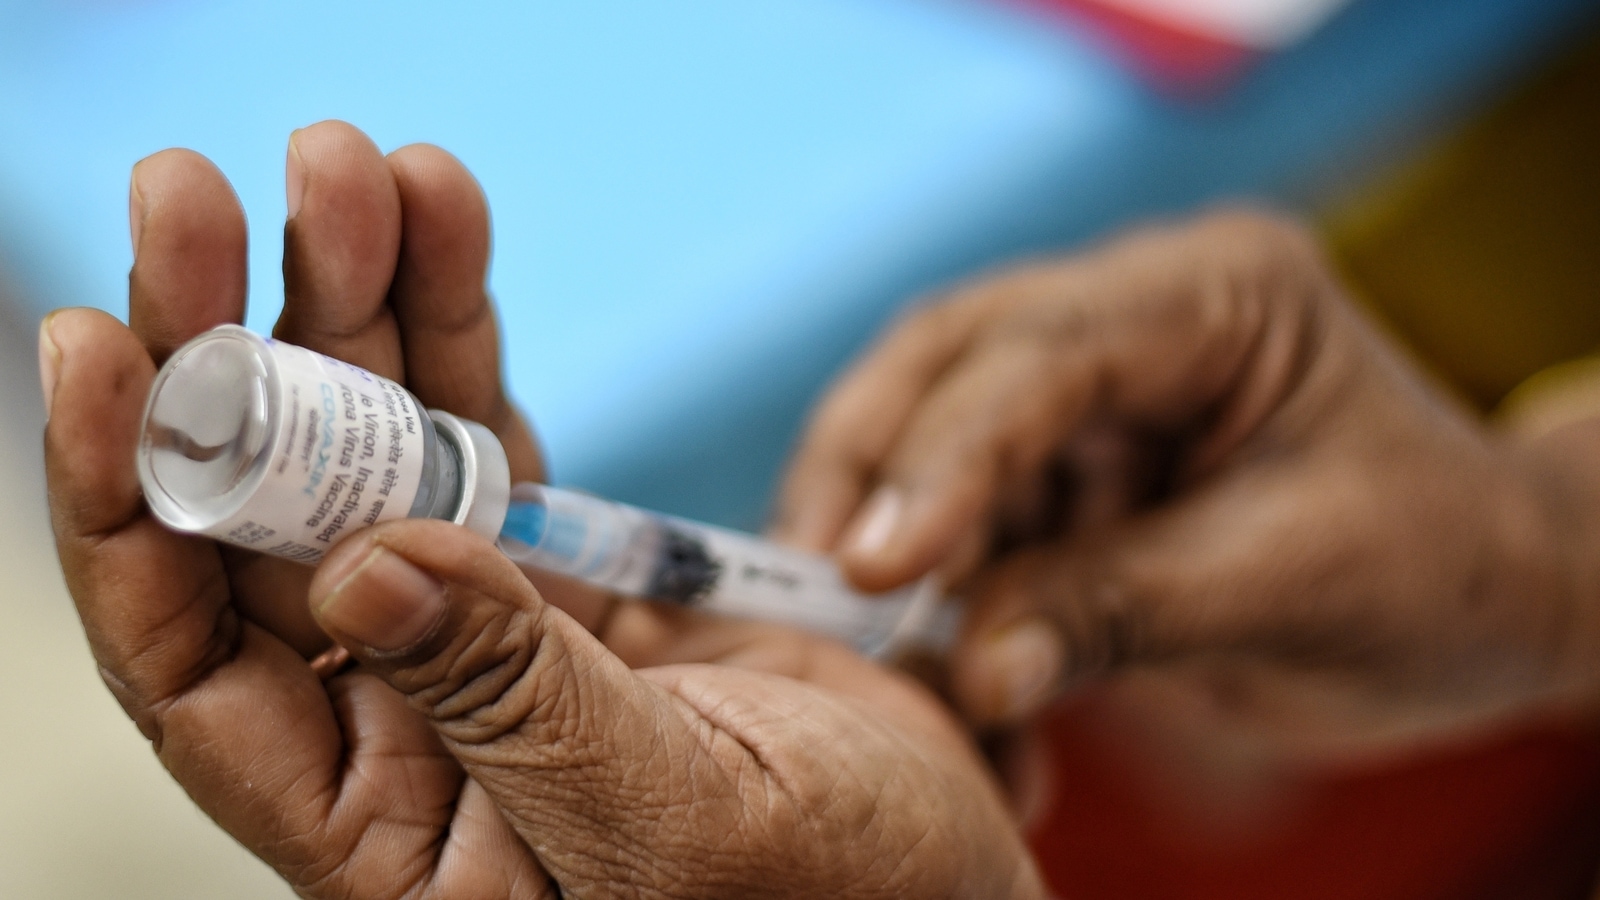 Luc montagnier on covid vaccine